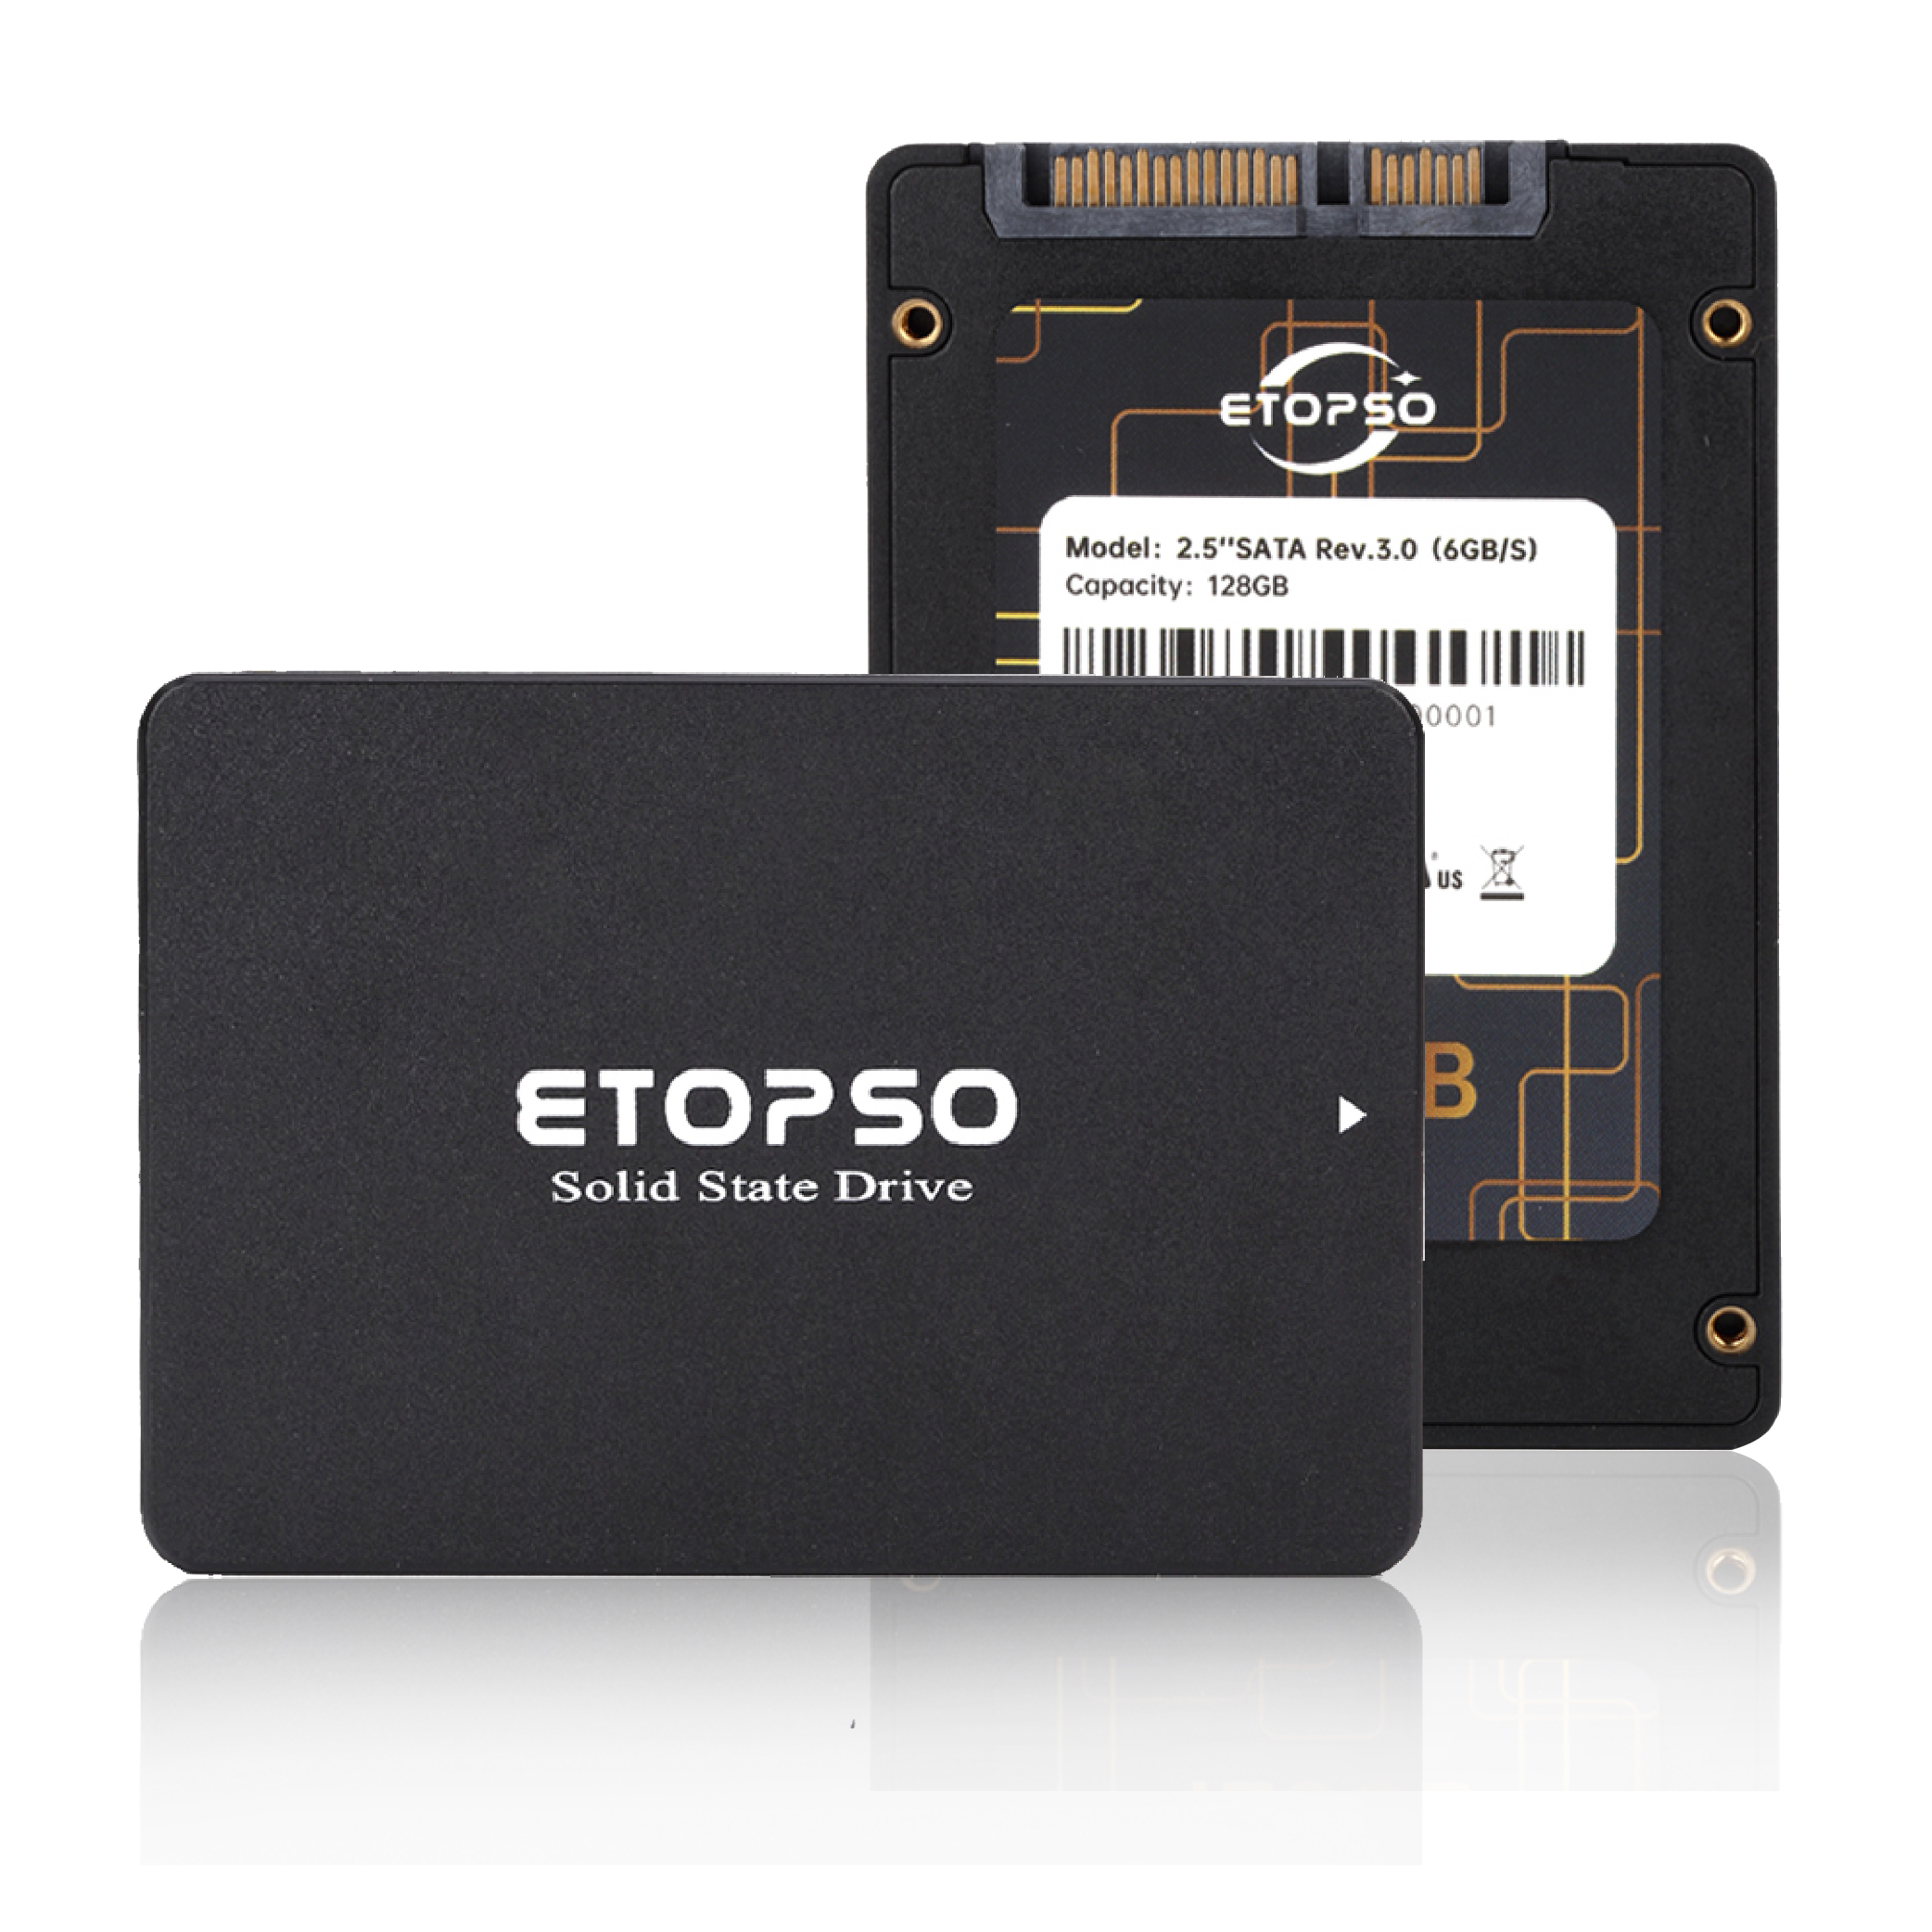 SSD 120g-tb подходит для ноутбуков и настольных компьютеров